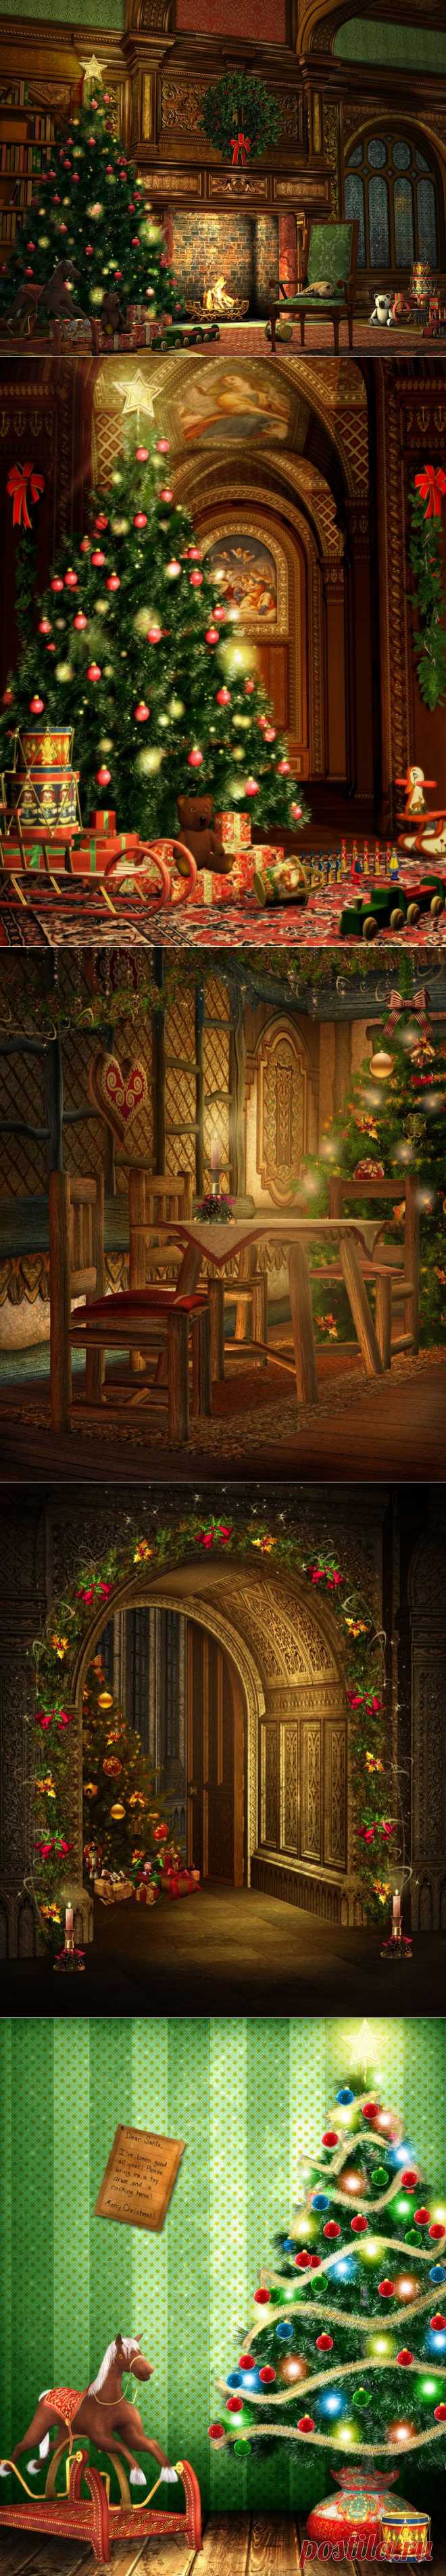 Большая рождественская ёлка | Newpix.ru - позитивный интернет-журнал